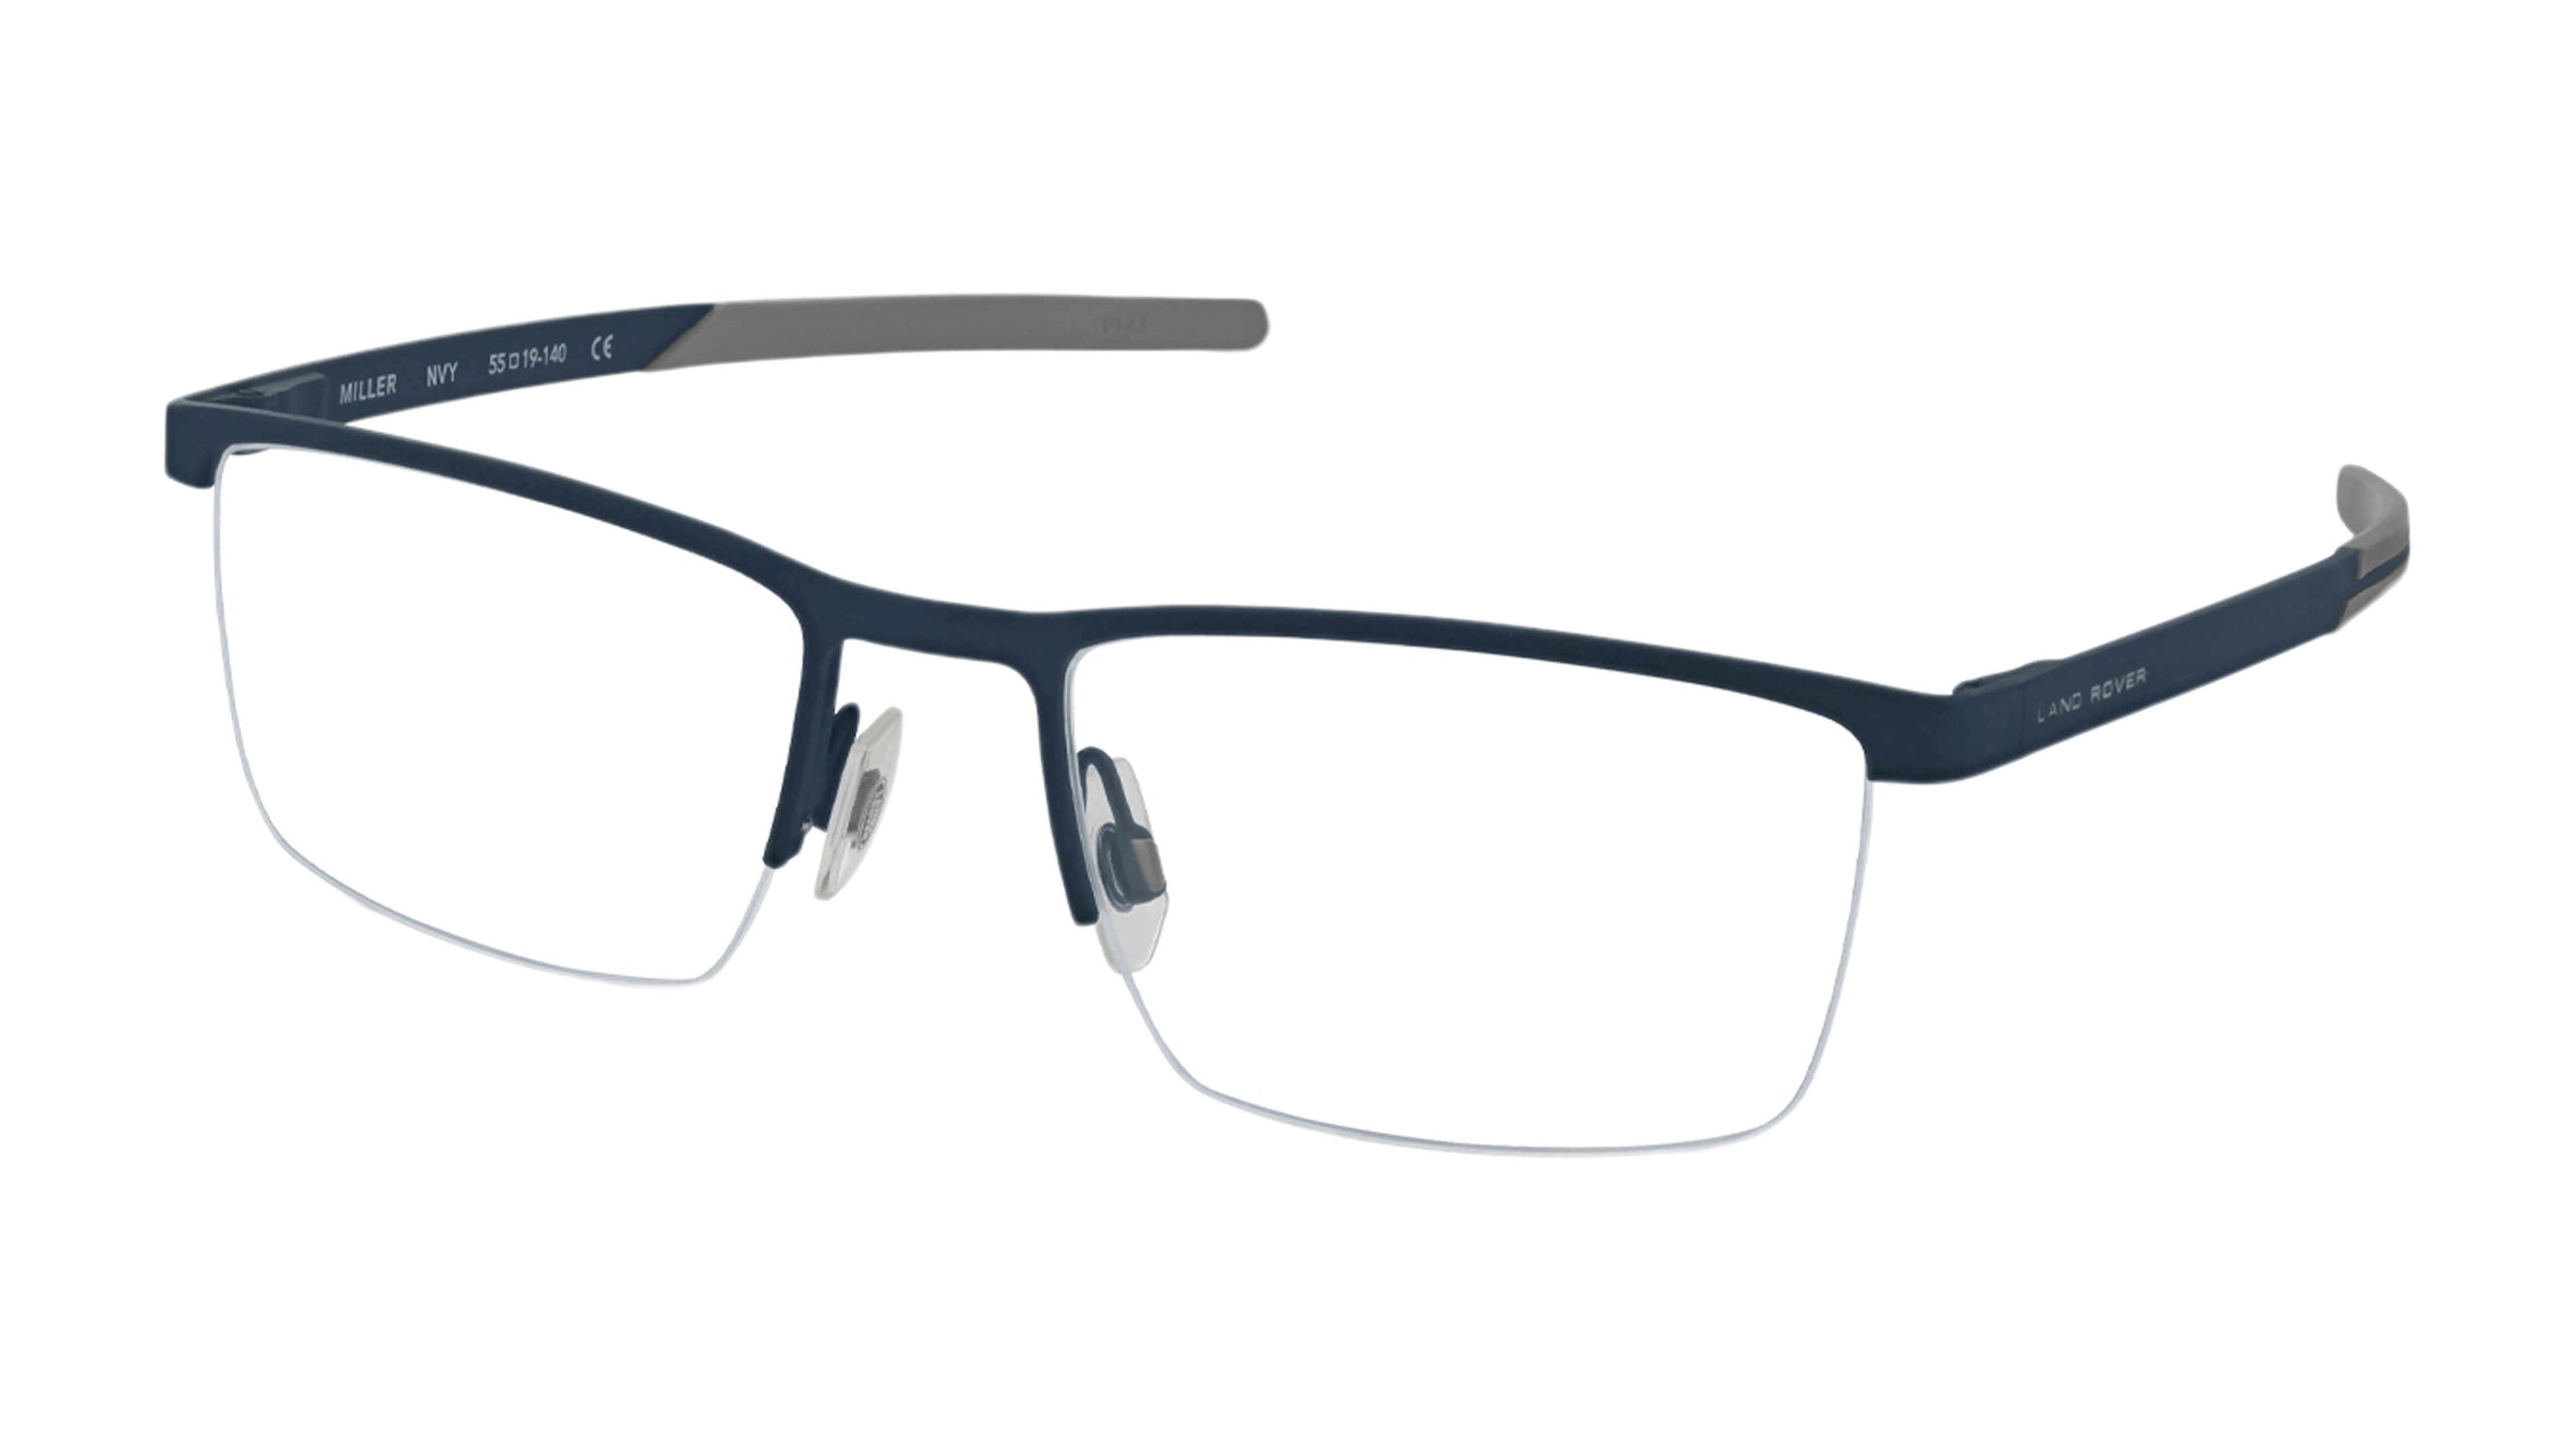 Angle_Left01 Land Rover Miller (BLK) Glasses Transparent / Black